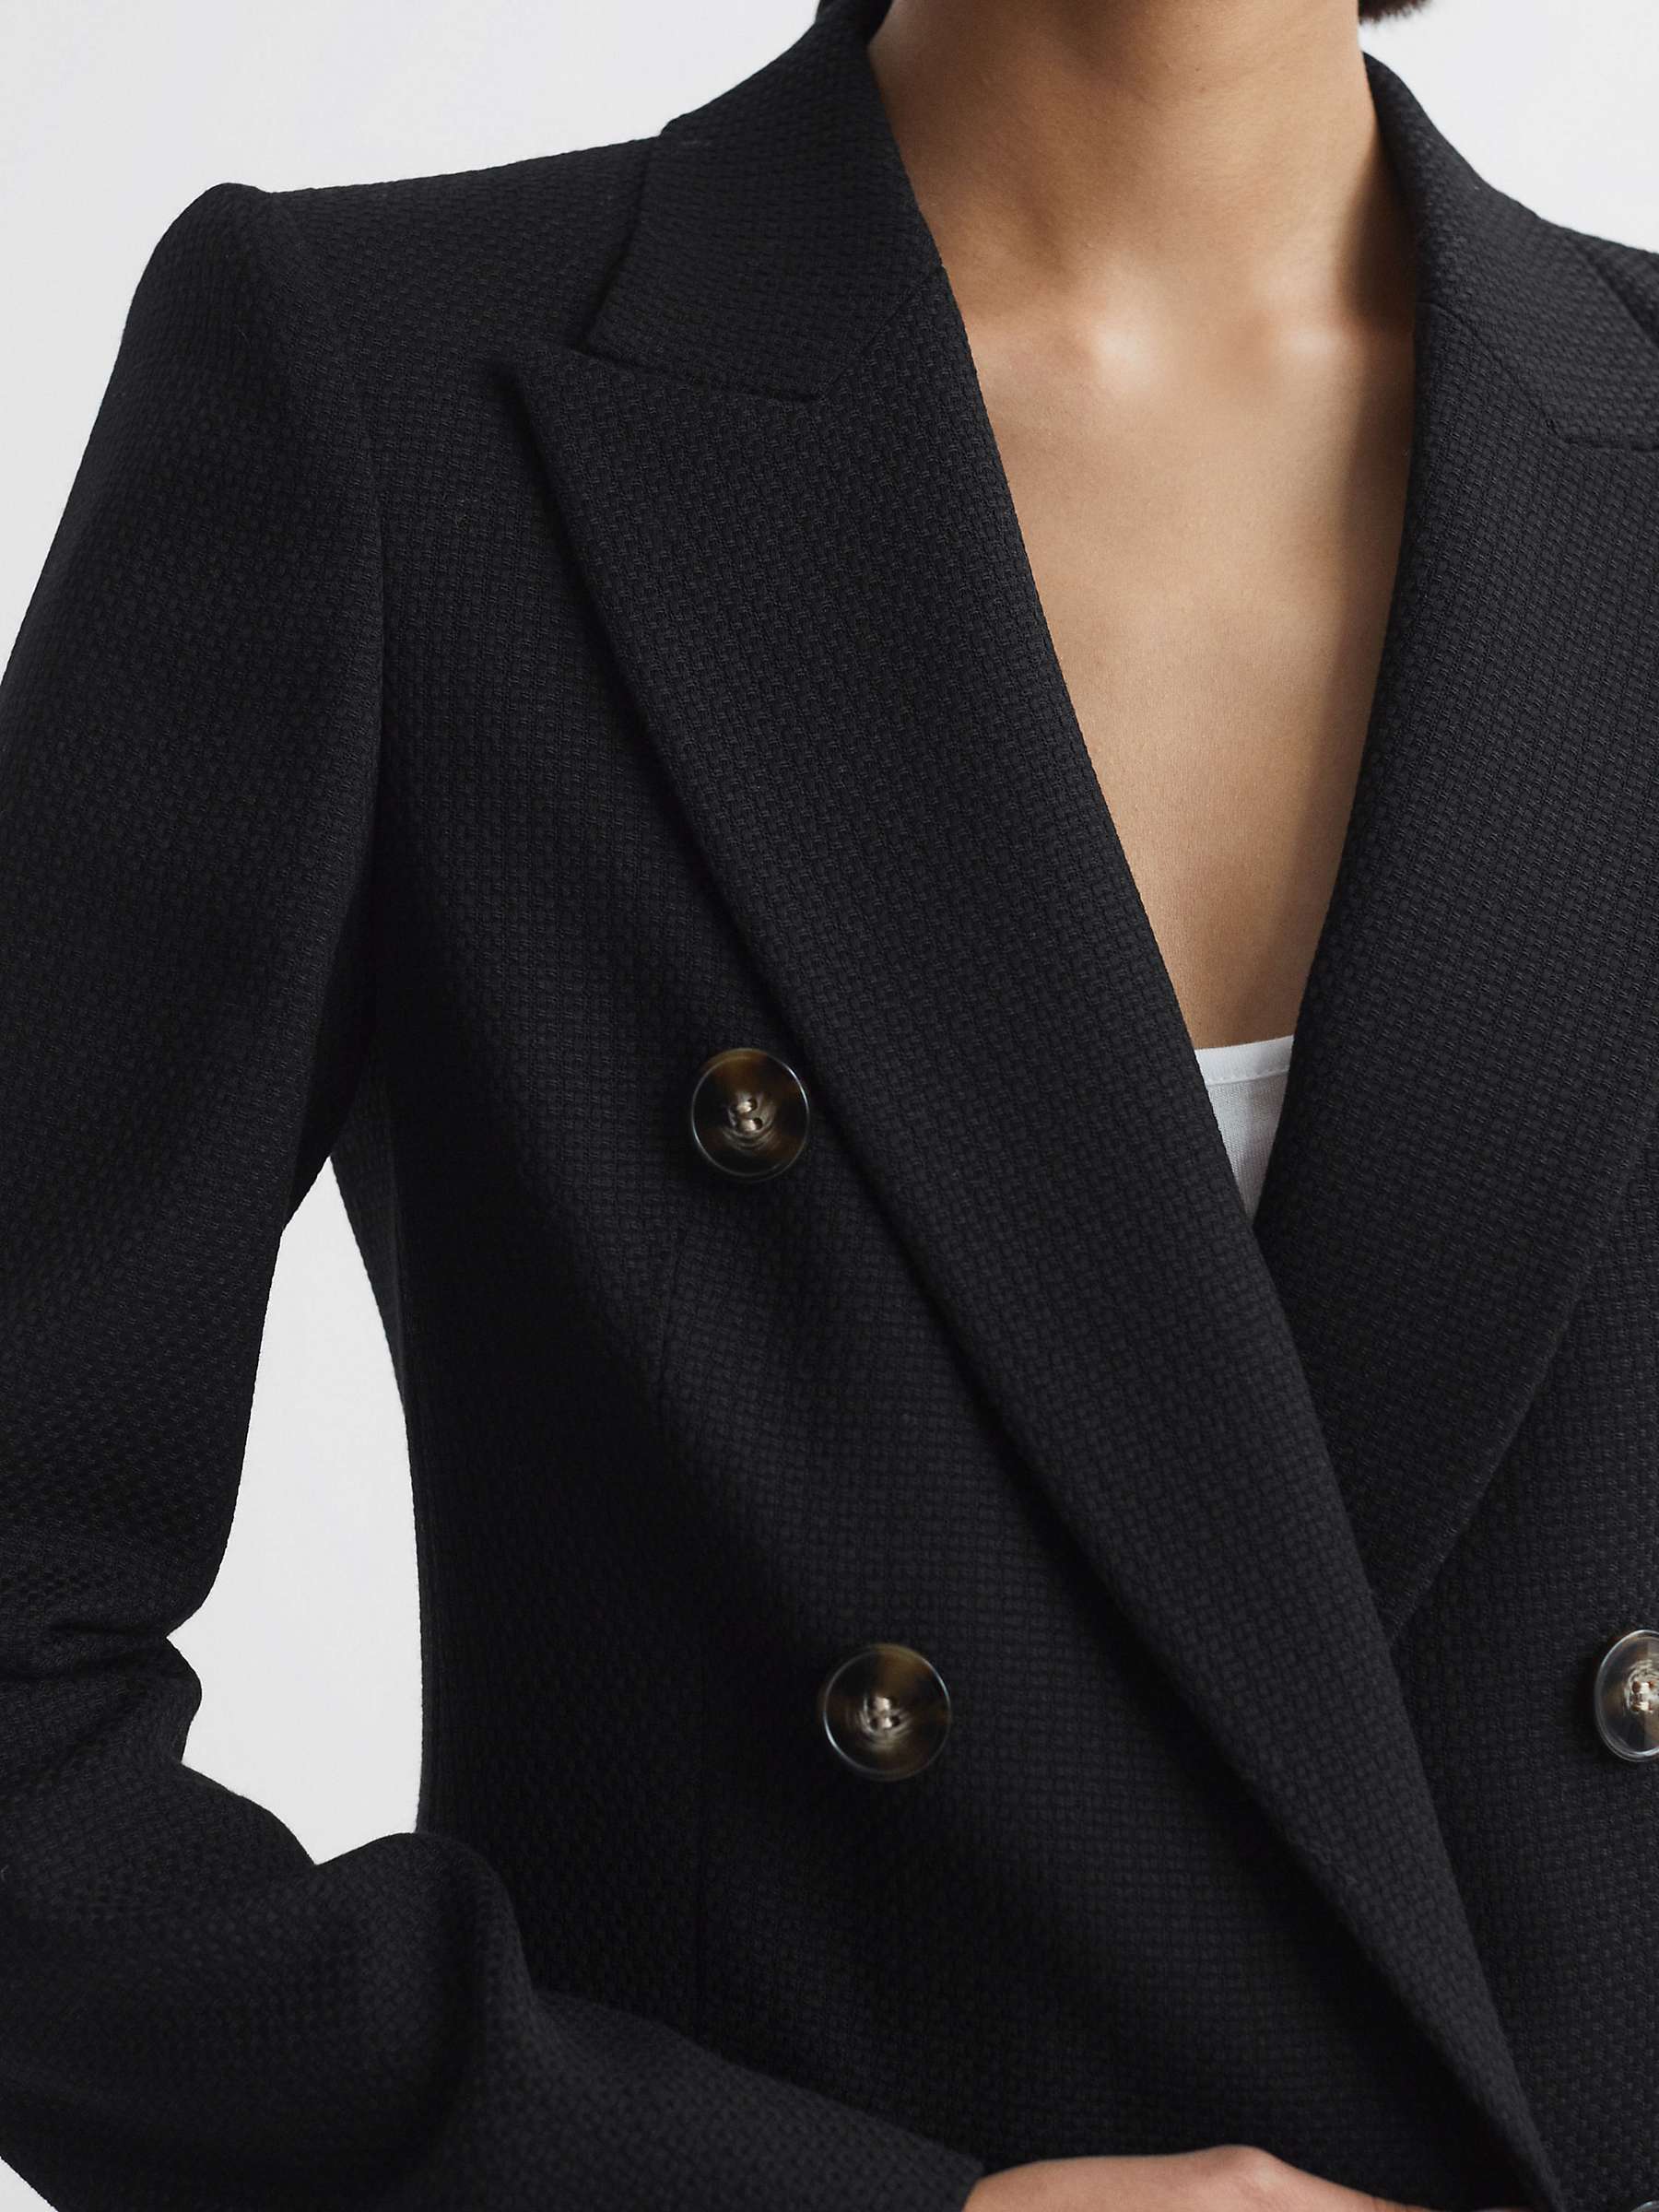 Buy Reiss Petite Lana Double Breasted Tweed Blazer, Black Online at johnlewis.com